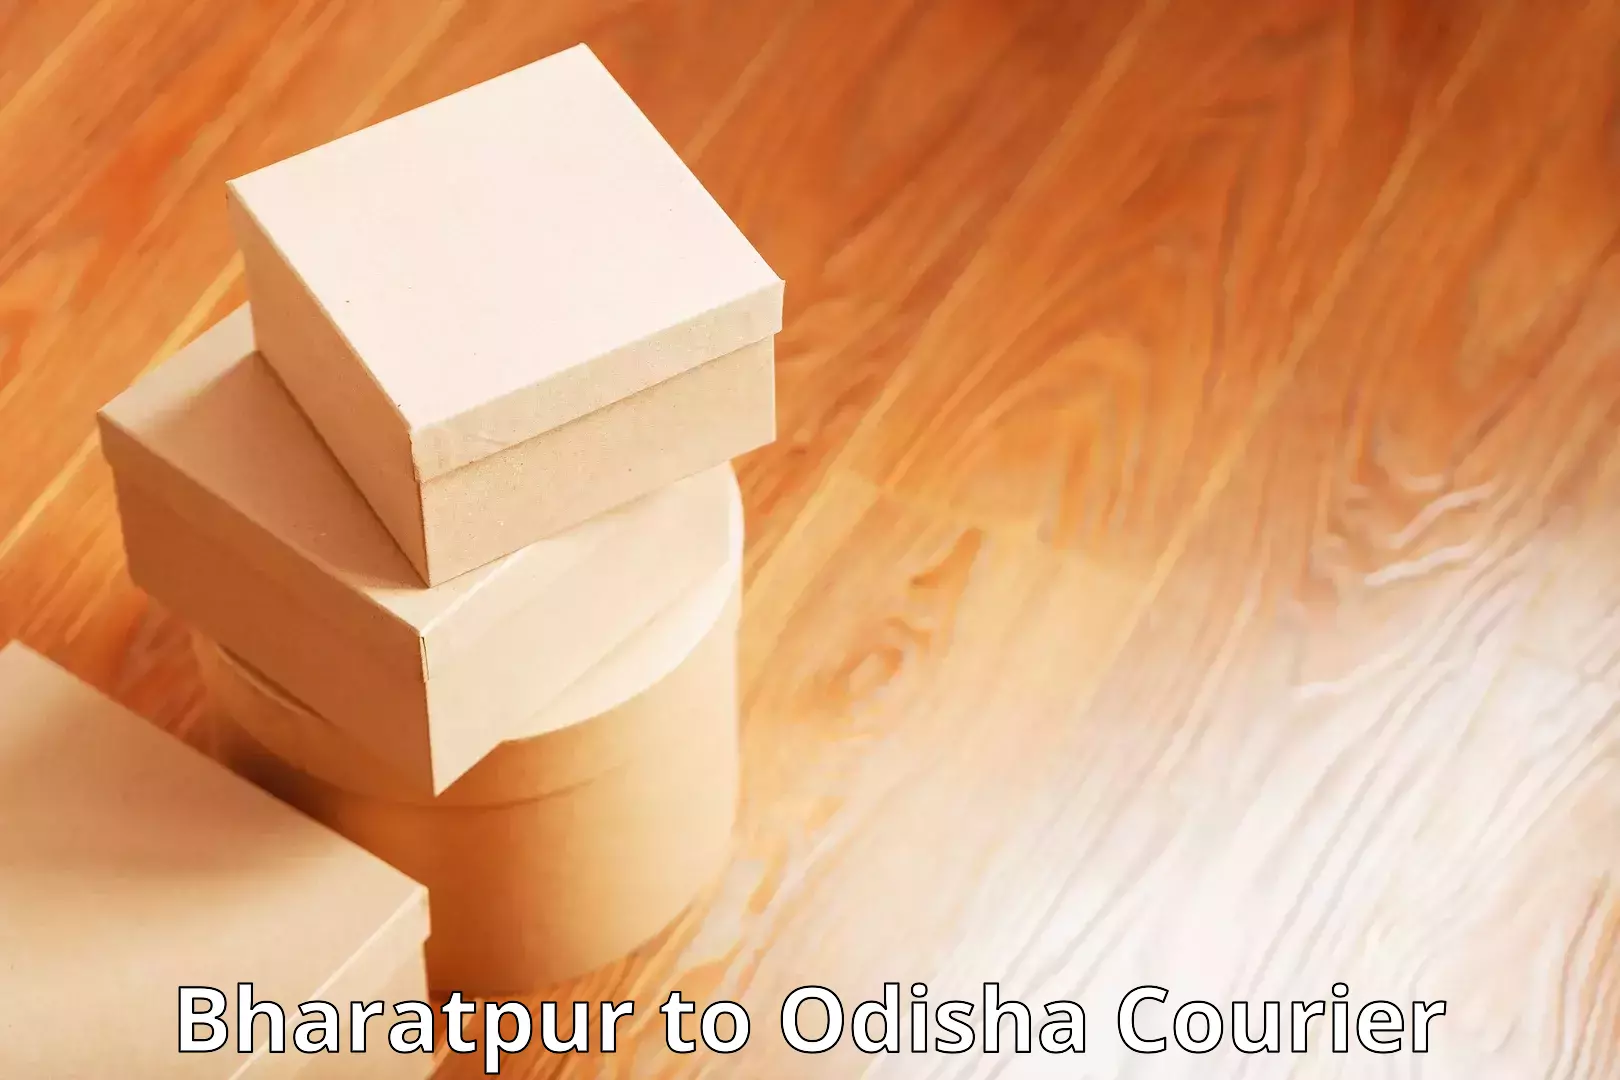 Efficient parcel service Bharatpur to Raruan